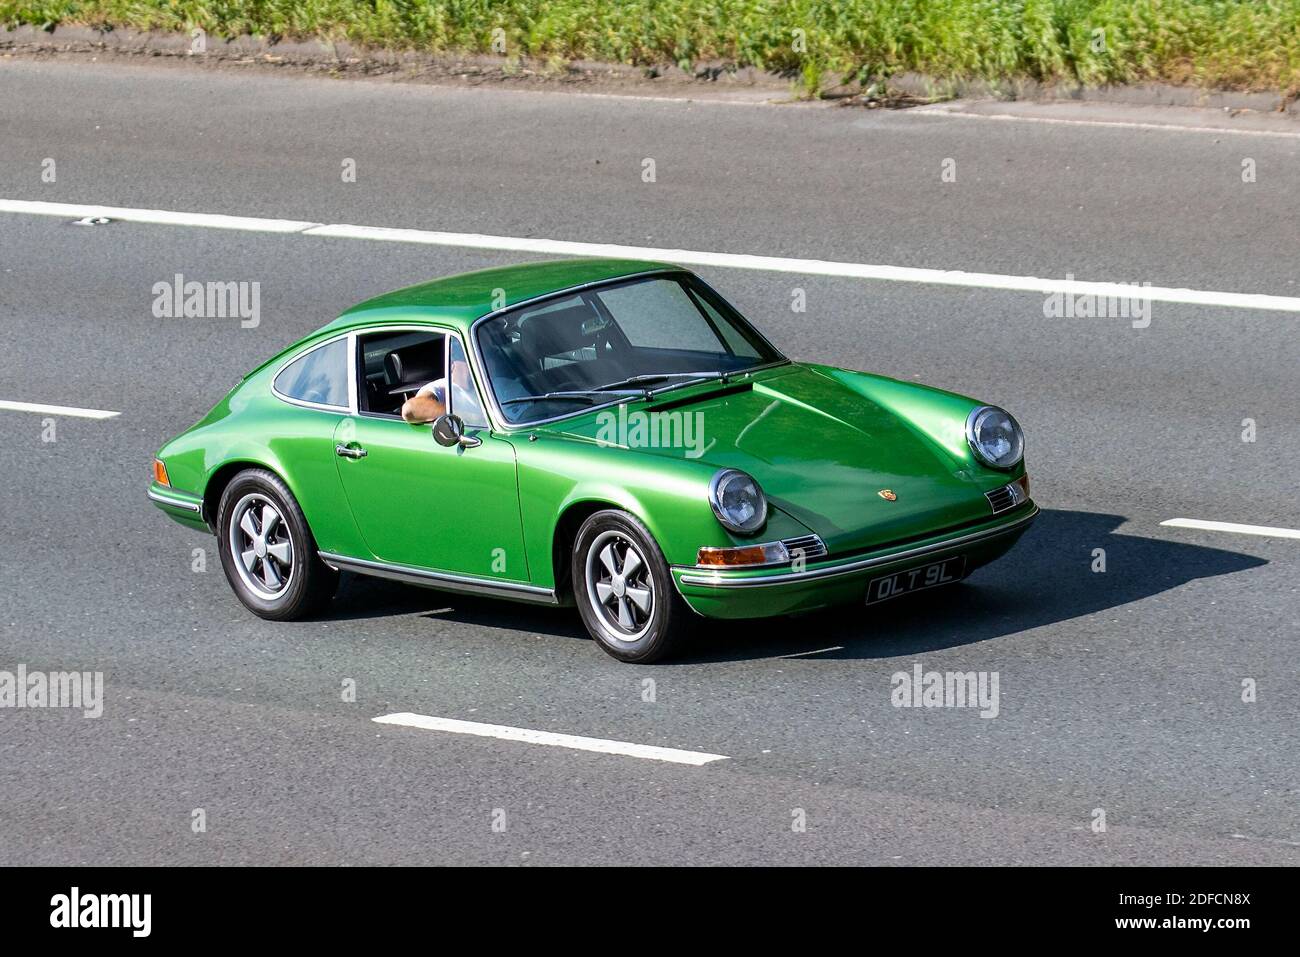 1980 80s Green Porsche 911; Fahrzeugverkehr, Fahrzeuge bewegen, Autos, Fahrzeug fahren auf britischen Straßen, Motoren, Fahren auf der Autobahn M6 Autobahn UK Straßennetz. Stockfoto